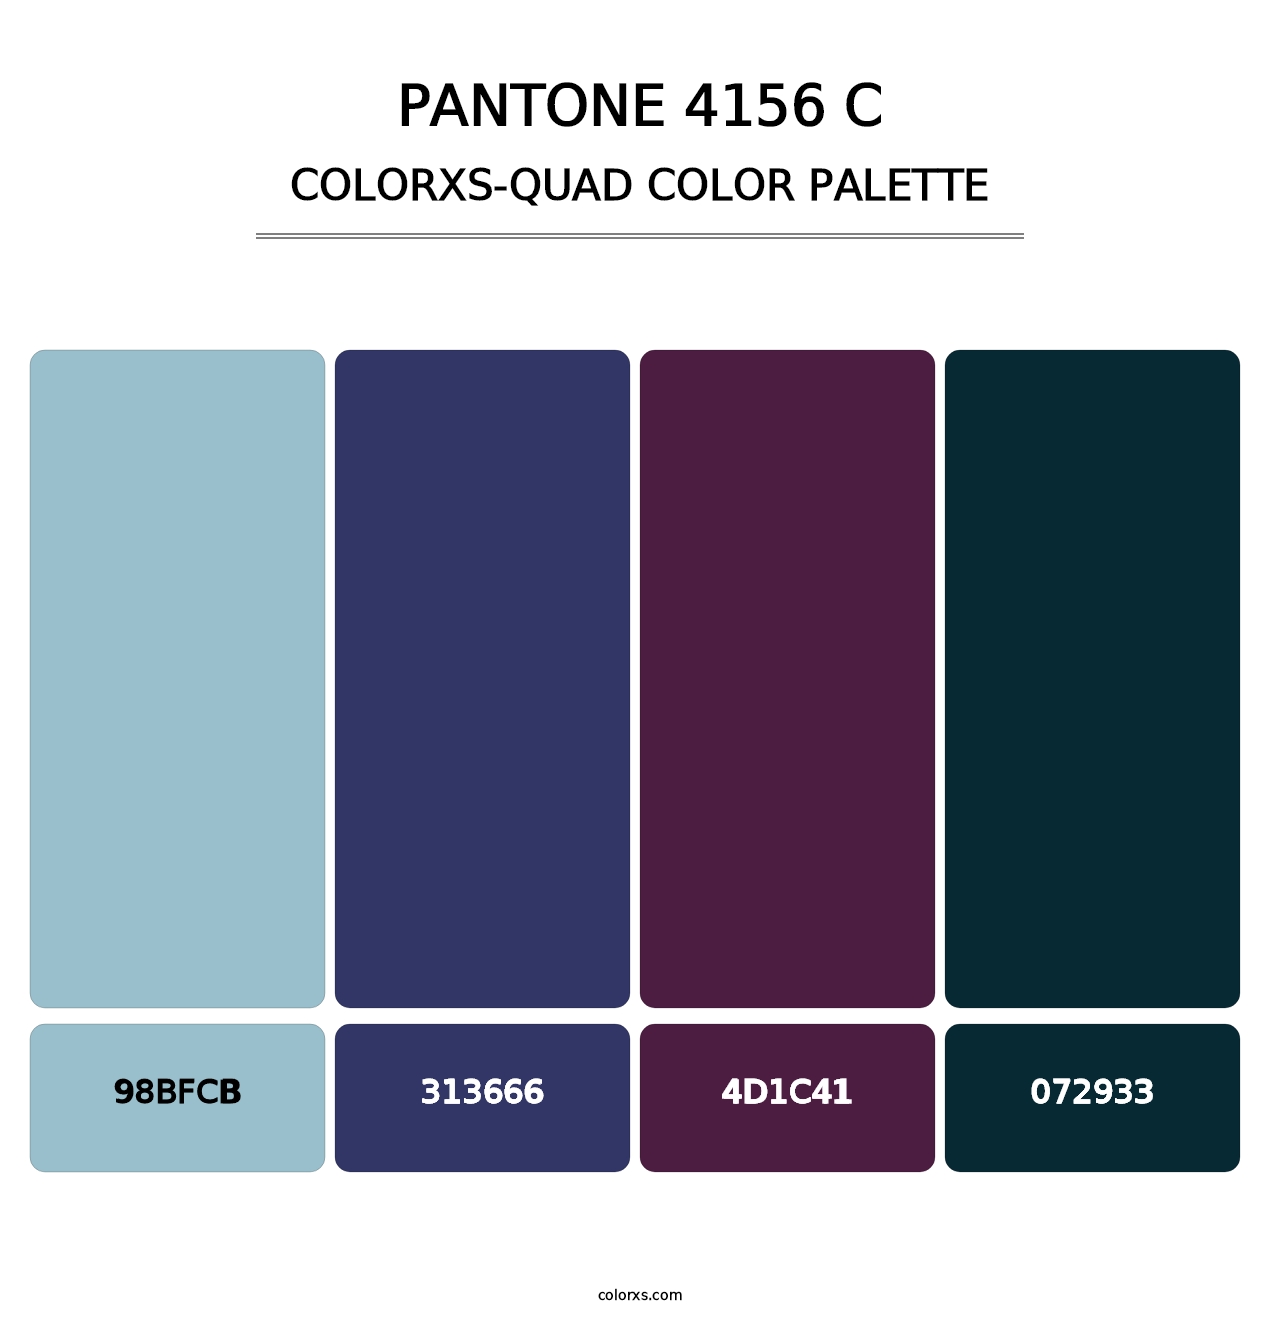 PANTONE 4156 C - Colorxs Quad Palette